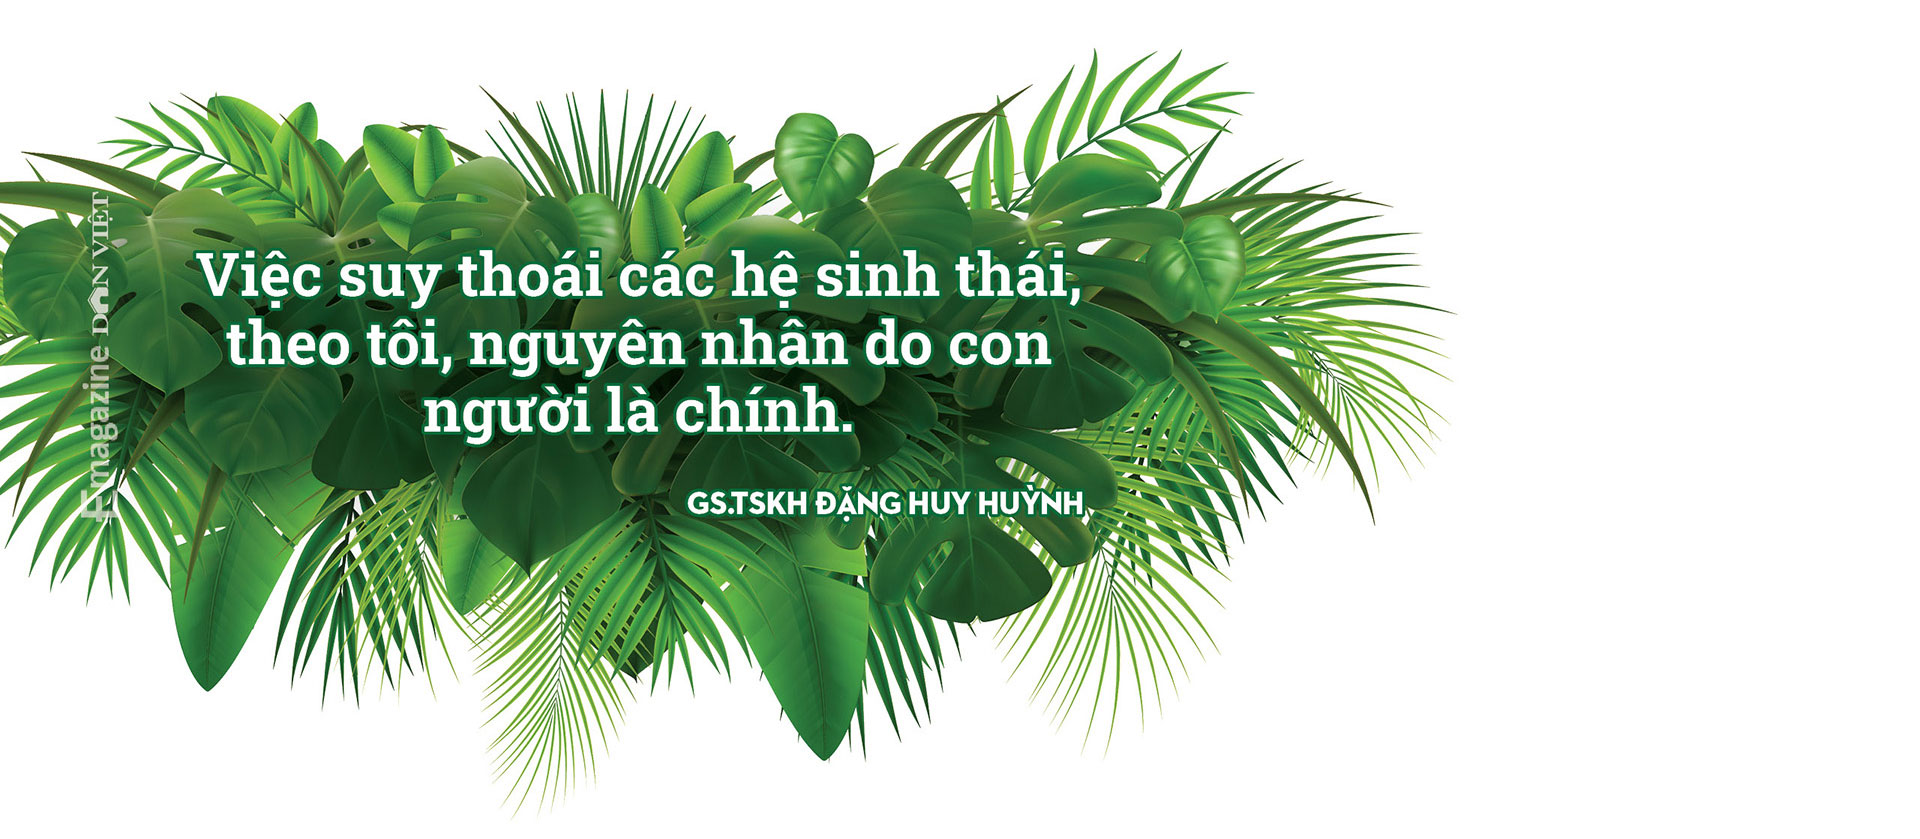 GS.TSKH Đặng Huy Huỳnh: “Những khu rừng nguyên sinh chỉ còn trong ký ức…”  - Ảnh 8.